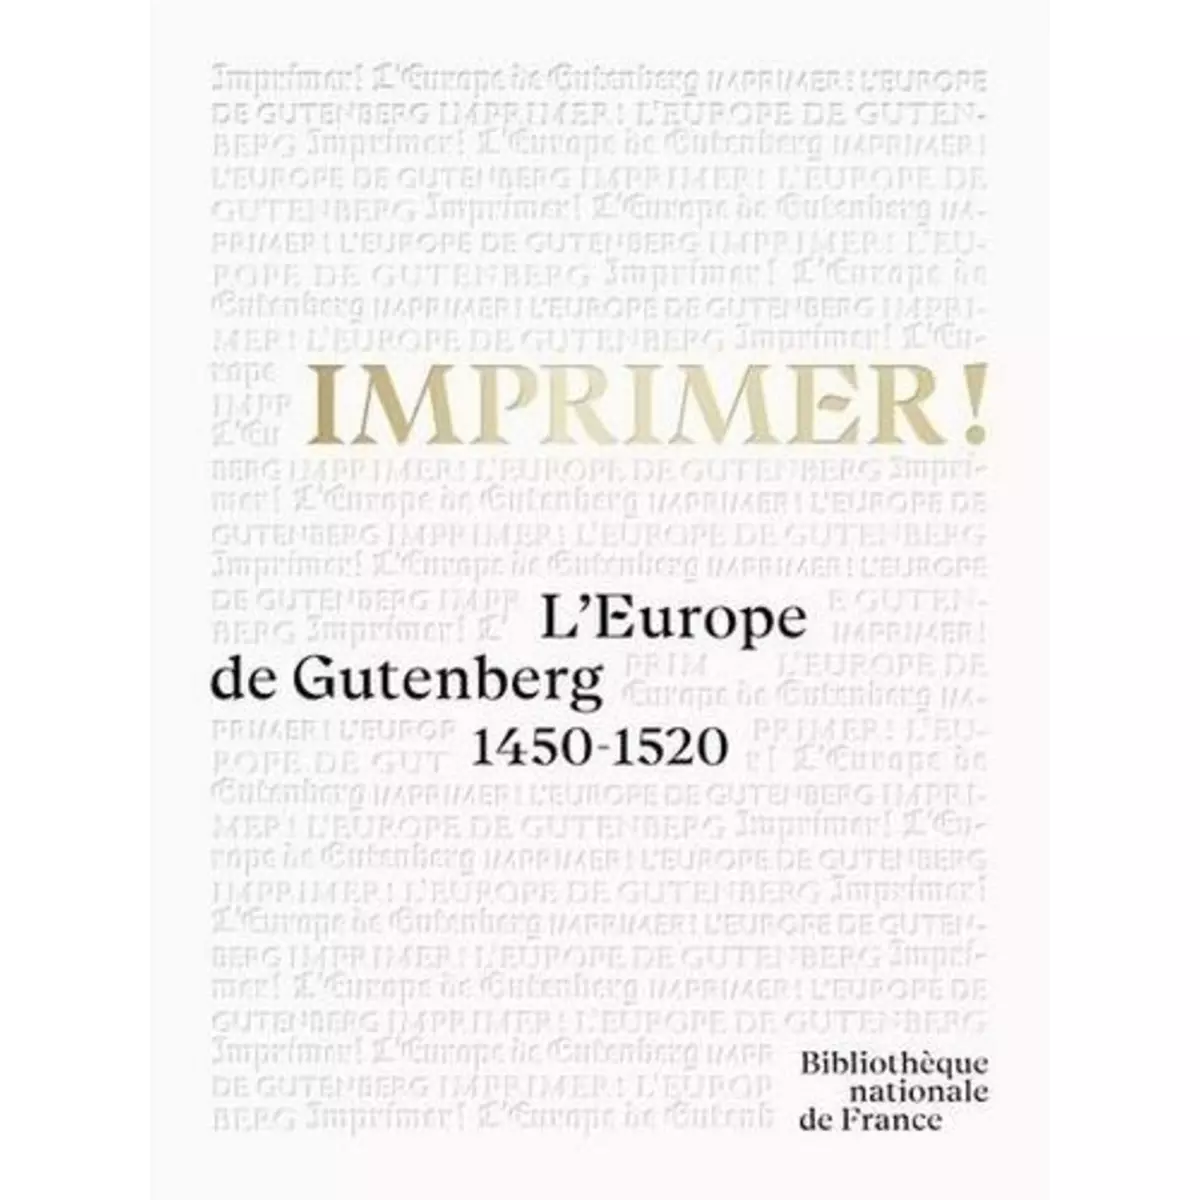  IMPRIMER ! L'EUROPE DE GUTENBERG 1450-1520, Coilly Nathalie